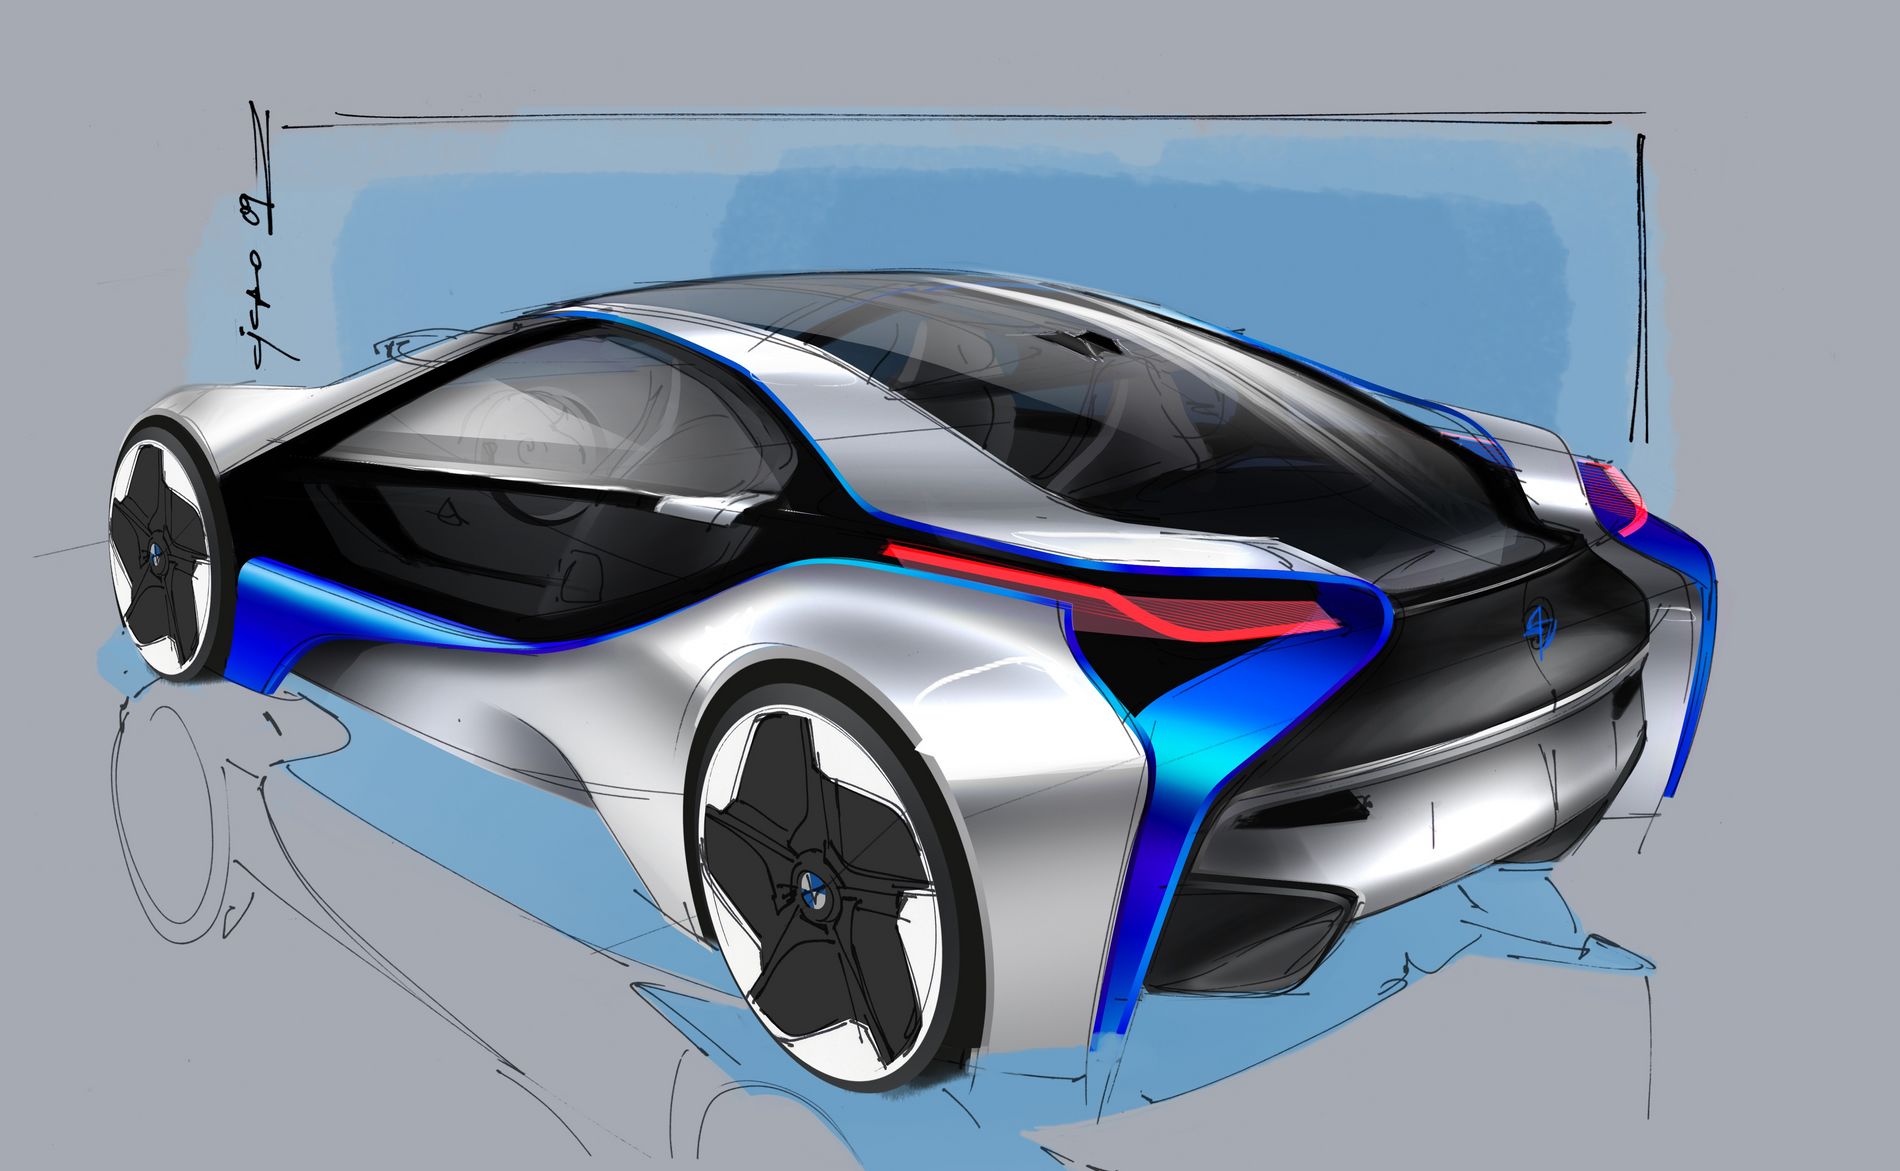 Bmw vision efficient dynamics electric concept car #4